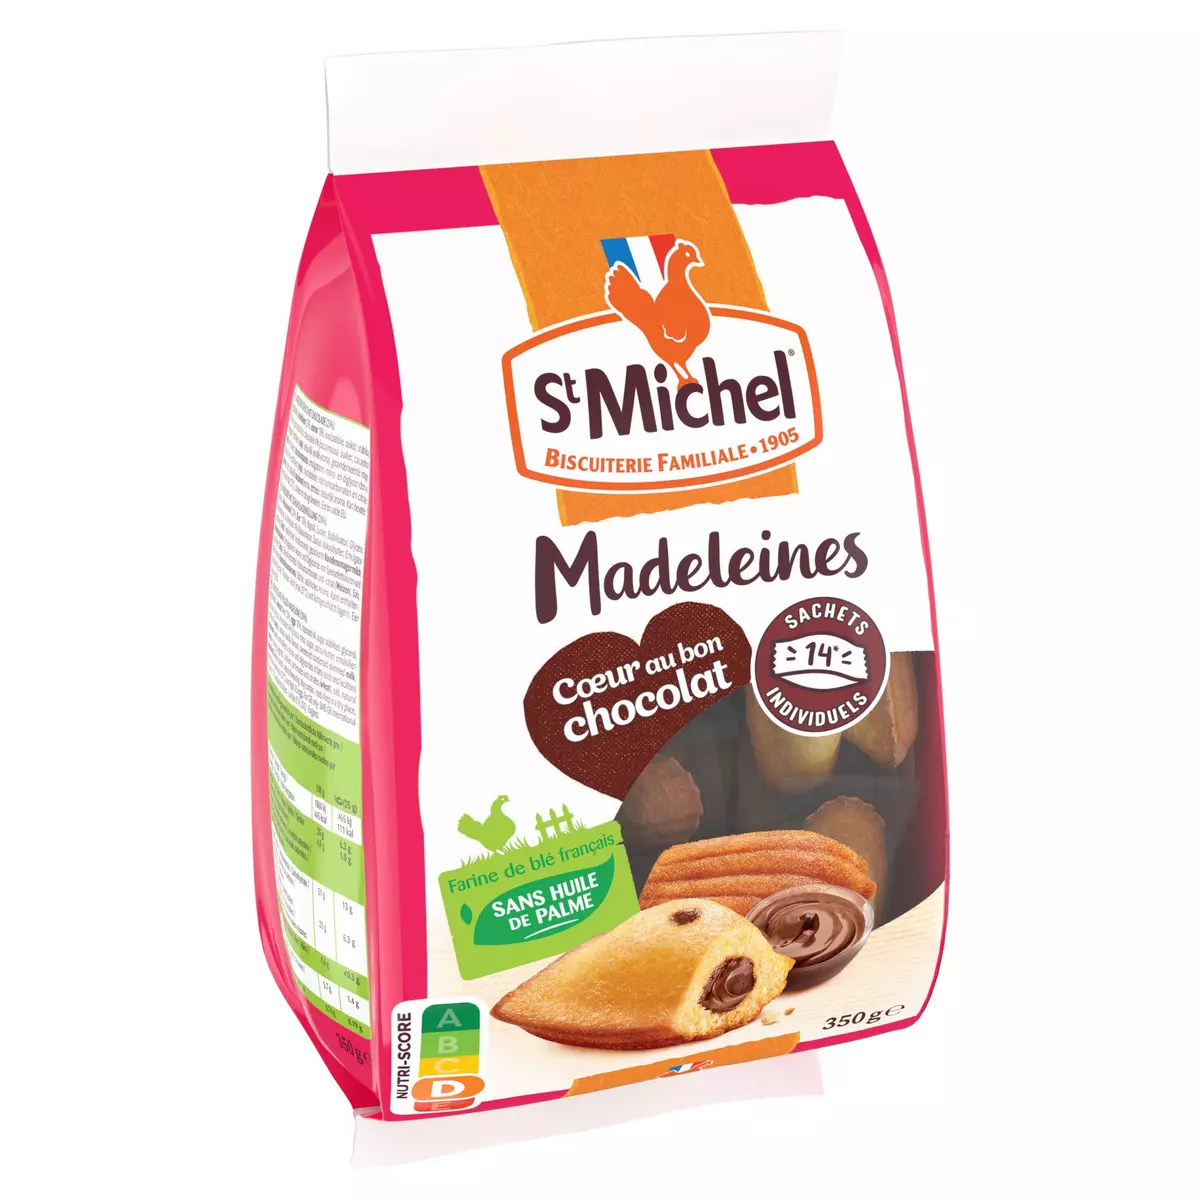 ST MICHEL Madeleines coeur au bon chocolat 14 madeleines 14x25g